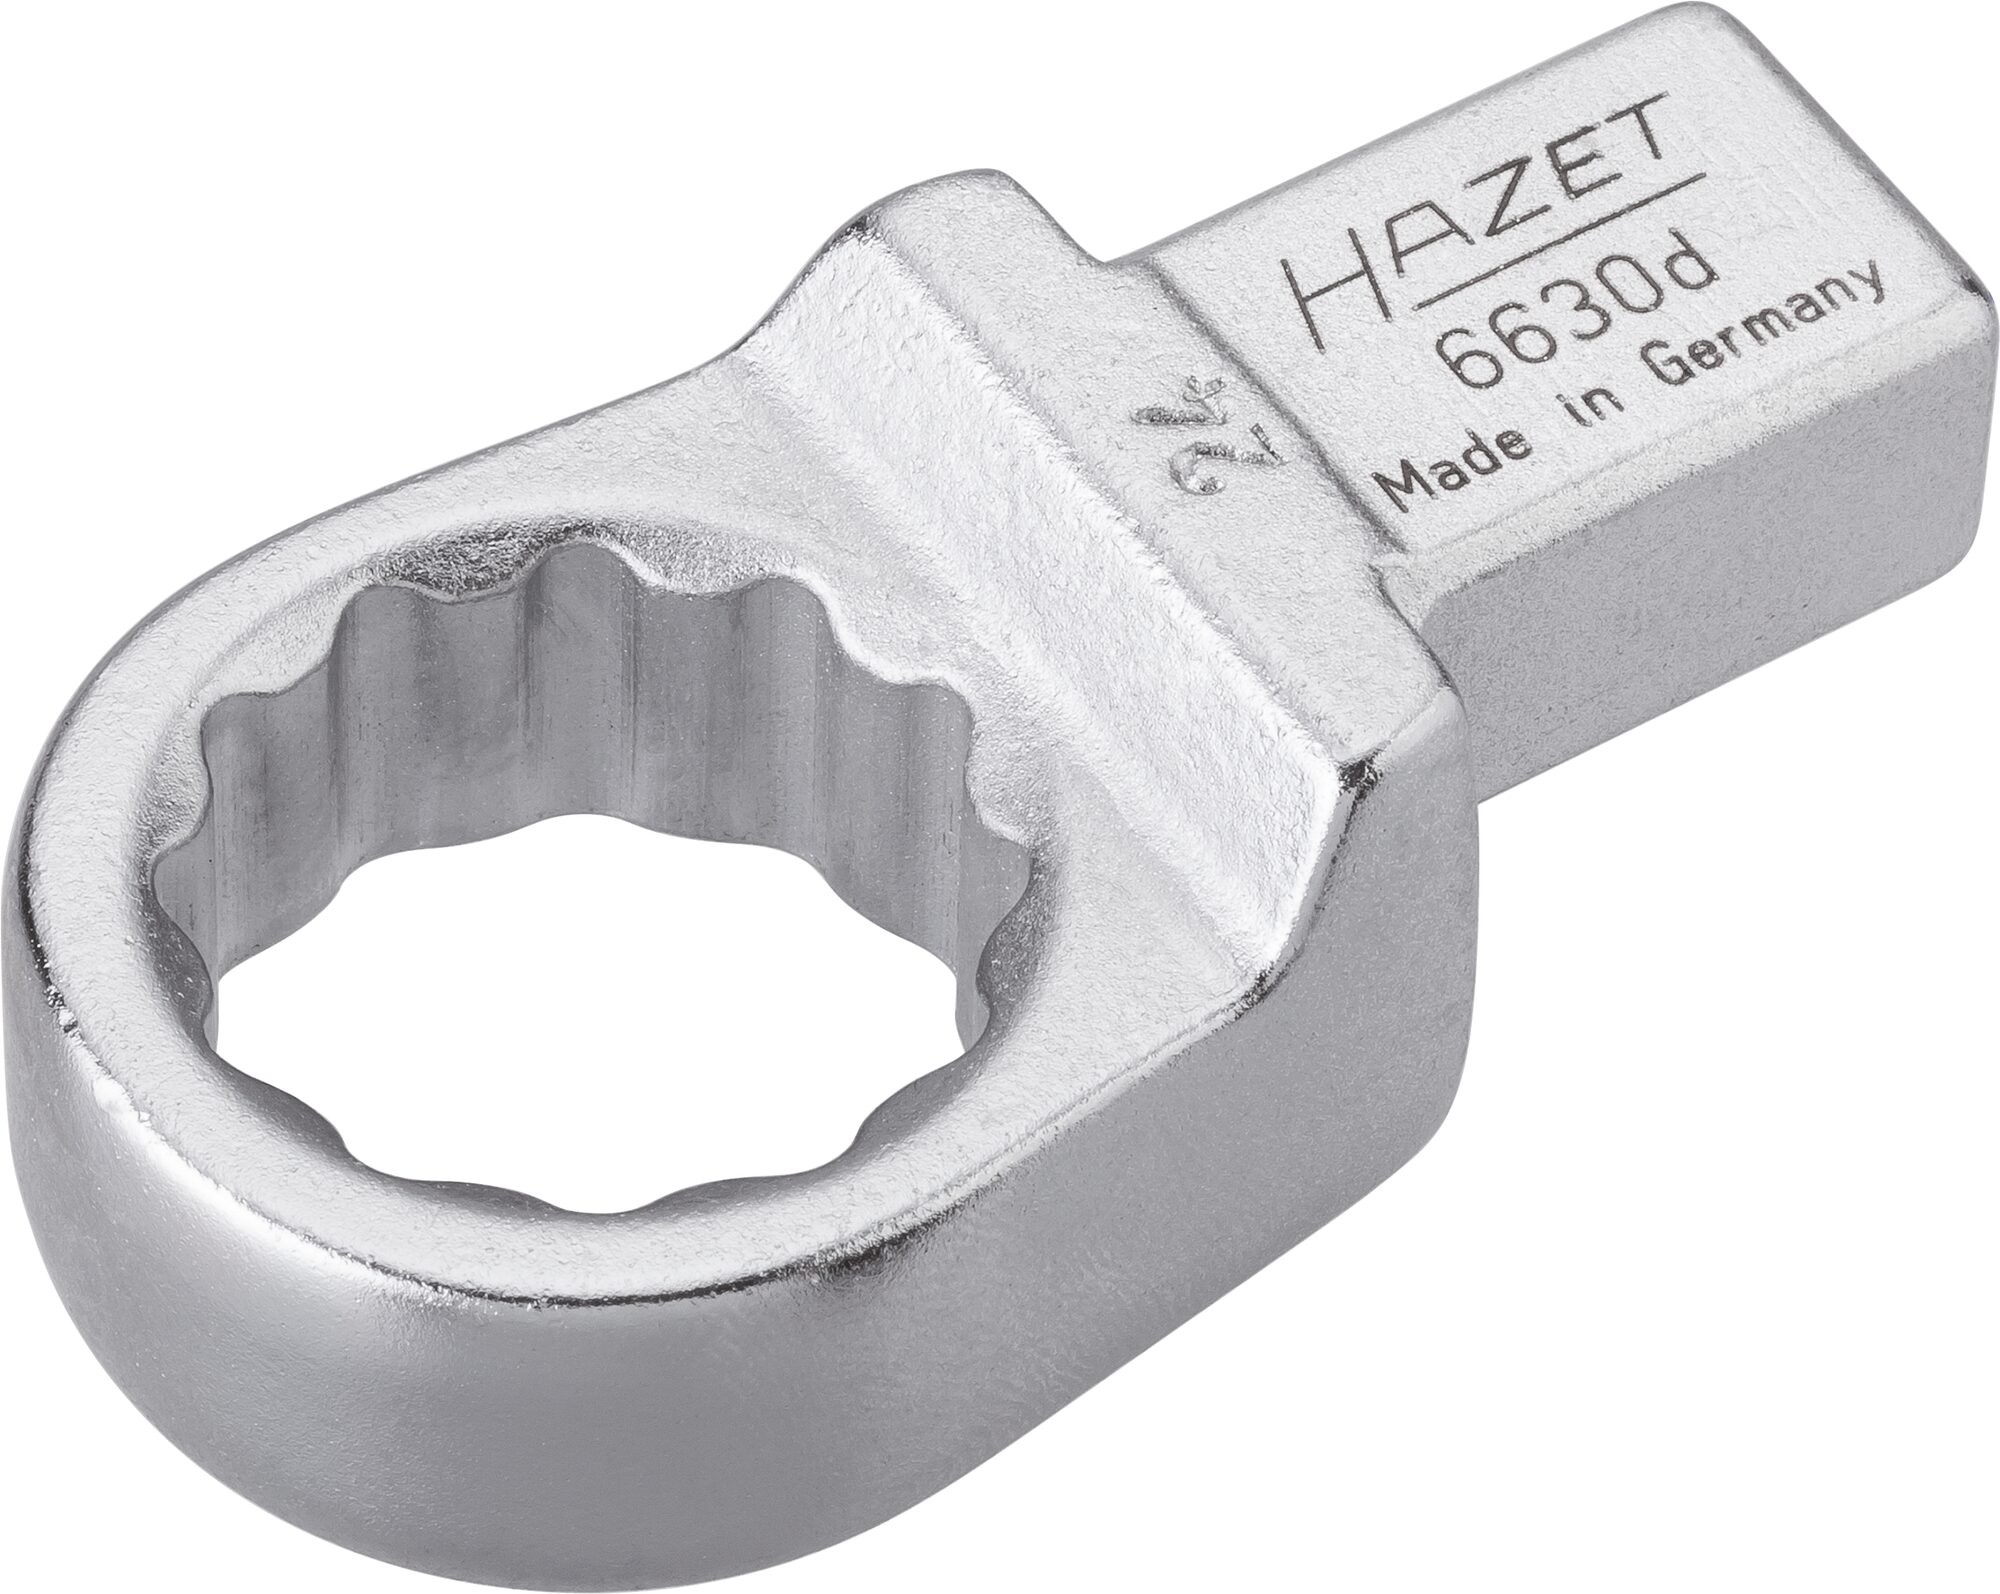 HAZET Einsteck-Ringschlüssel 6630D-24 · Einsteck-Vierkant 14 x 18 mm · Außen Doppel-Sechskant-Tractionsprofil · 24 mm